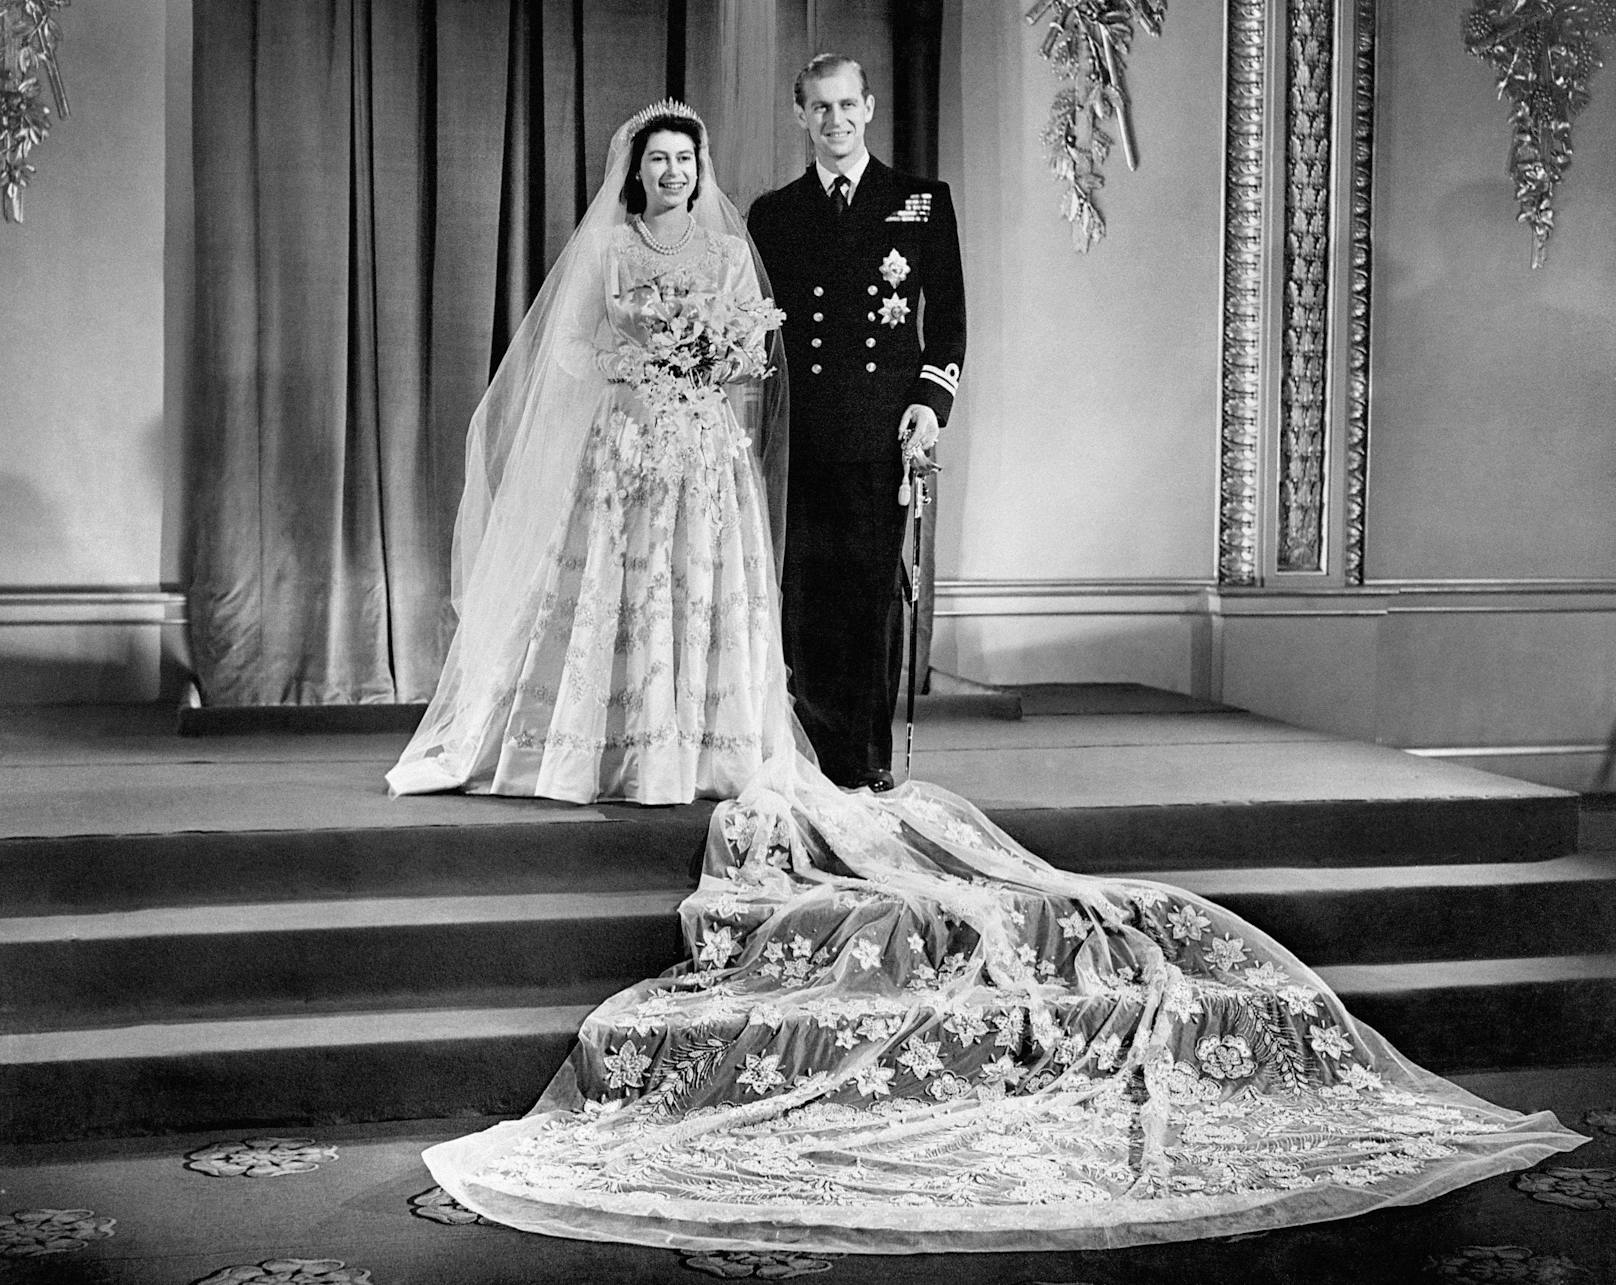 Einer ihrer glücklichsten Tage im Leben: Die Hochzeit mit ihrem geliebten Prinz Philip.